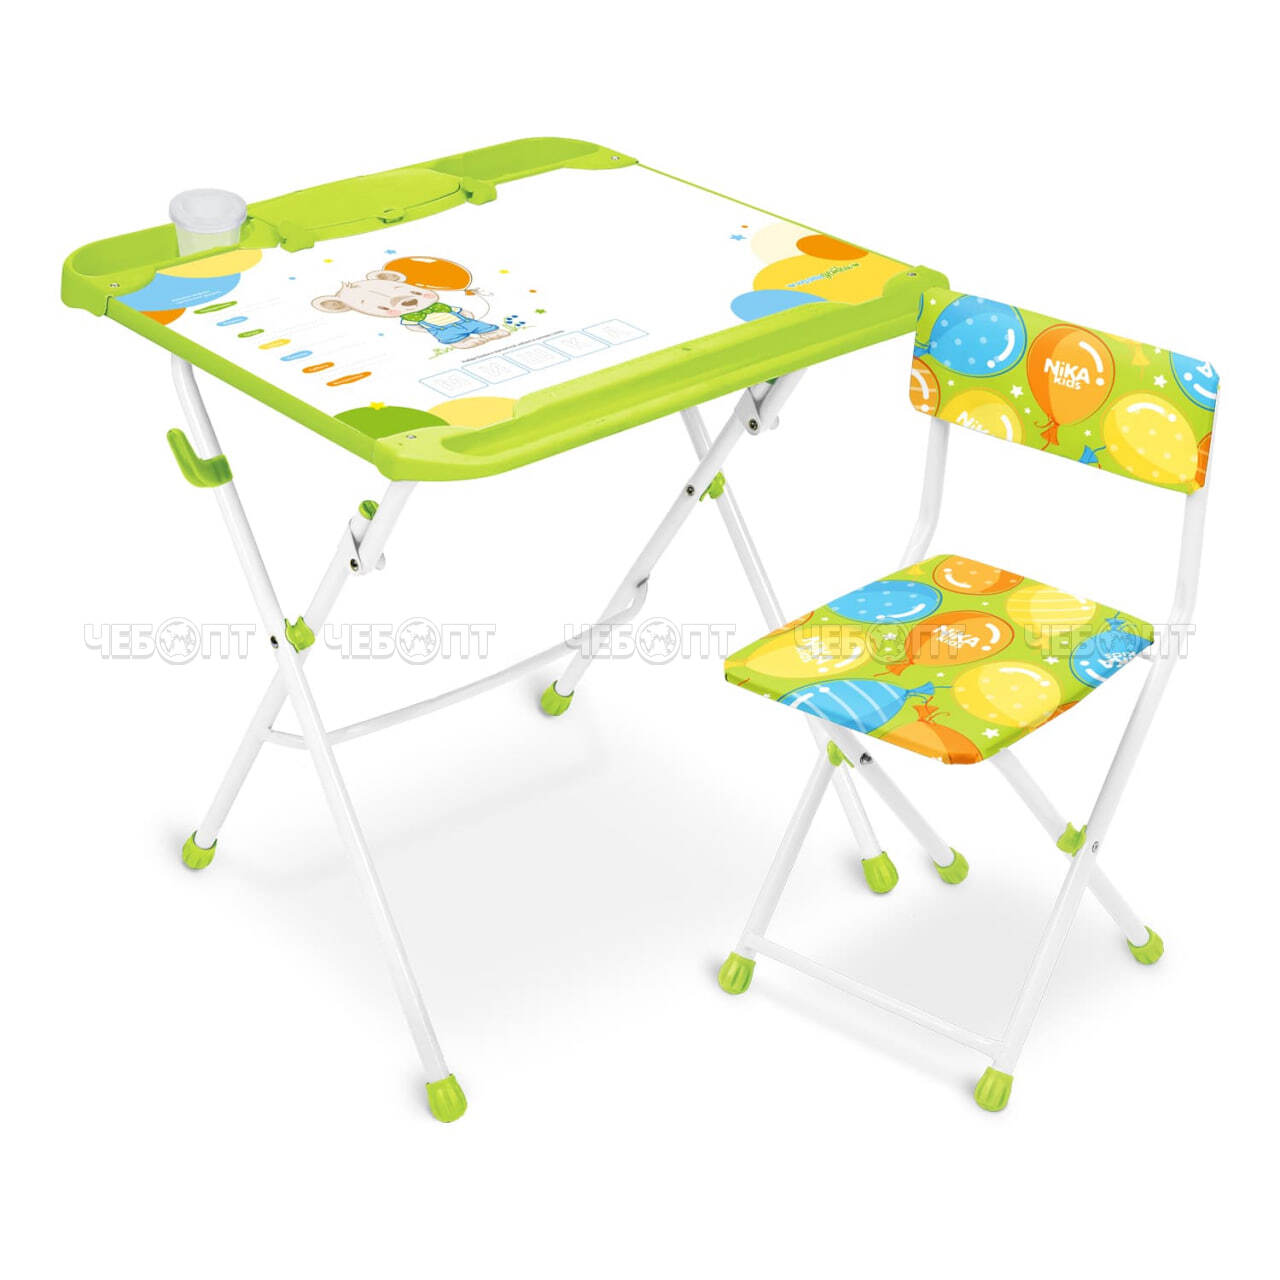 Комплект детской мебели "НАШИ ДЕТКИ" 3в1: стол-парта + мольберт + стул (магн. мозаика и азбука, пенал, стакан) возраст 3-7 арт. КНД5 [1] NIKA. ЧЕБОПТ.